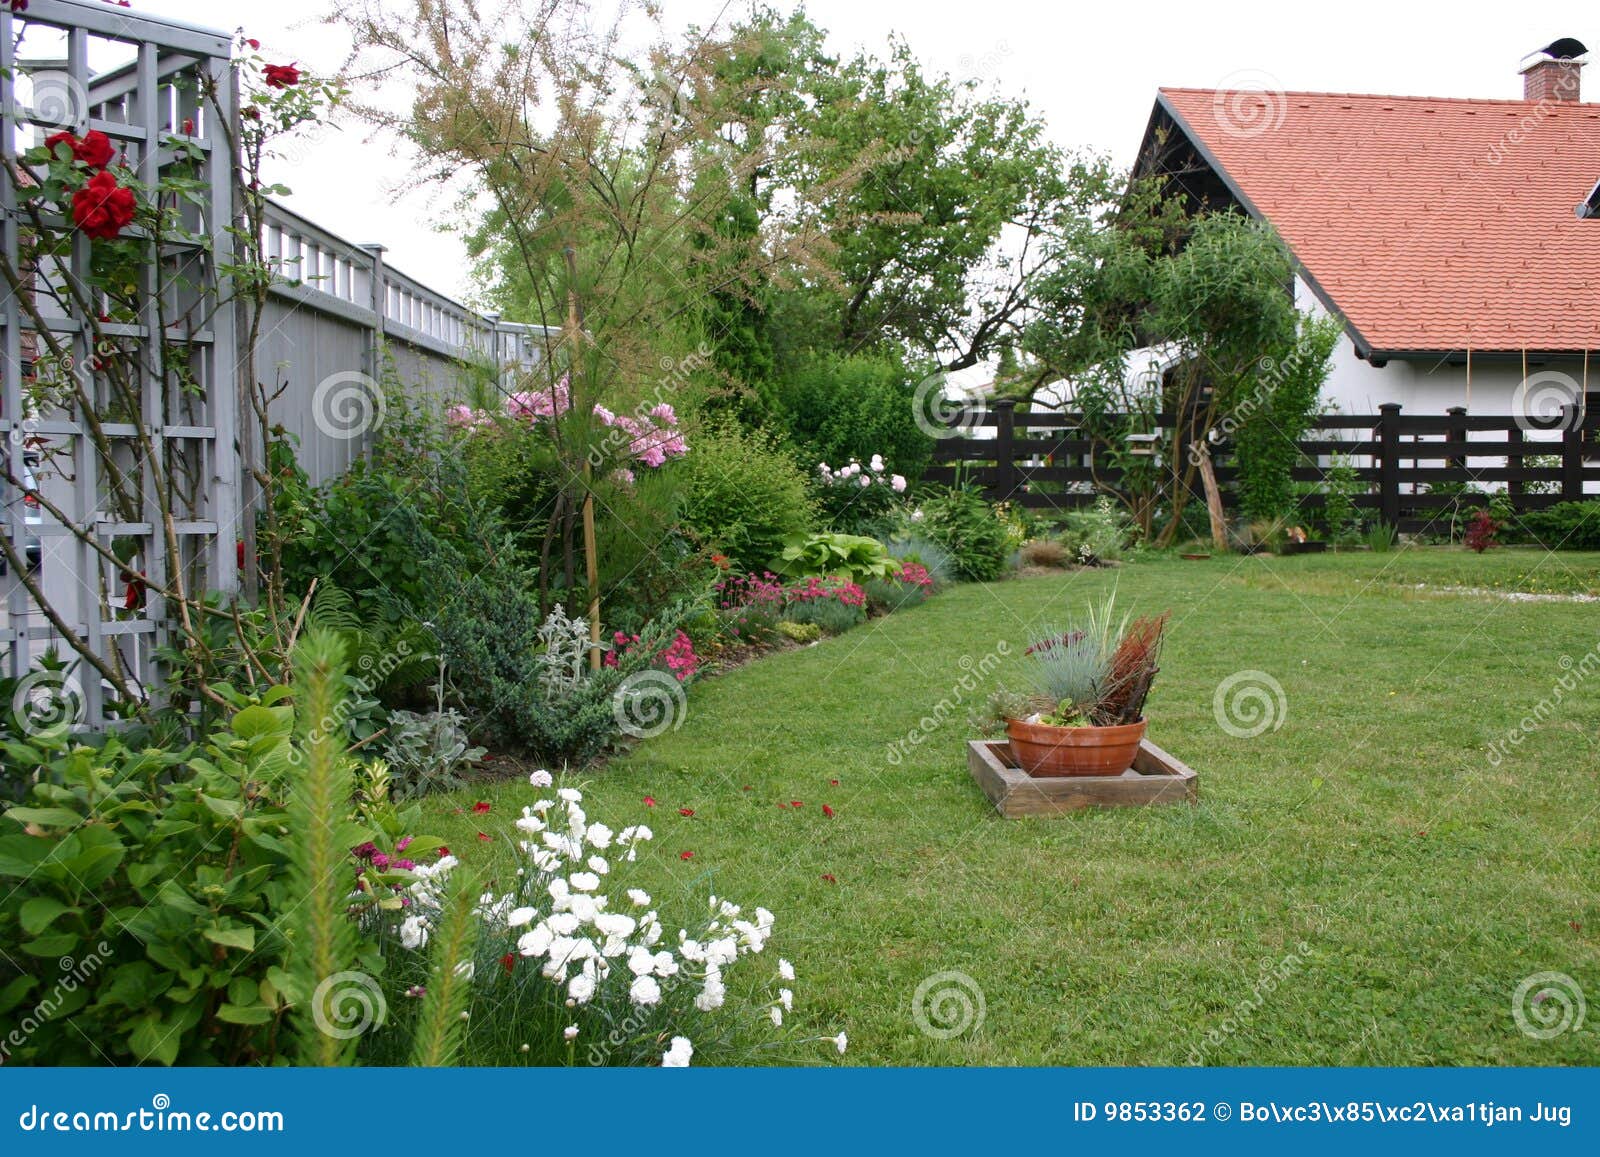 Esto es una foto del pequeño jardín. Es cuidado tomado muy interesante y bien para.